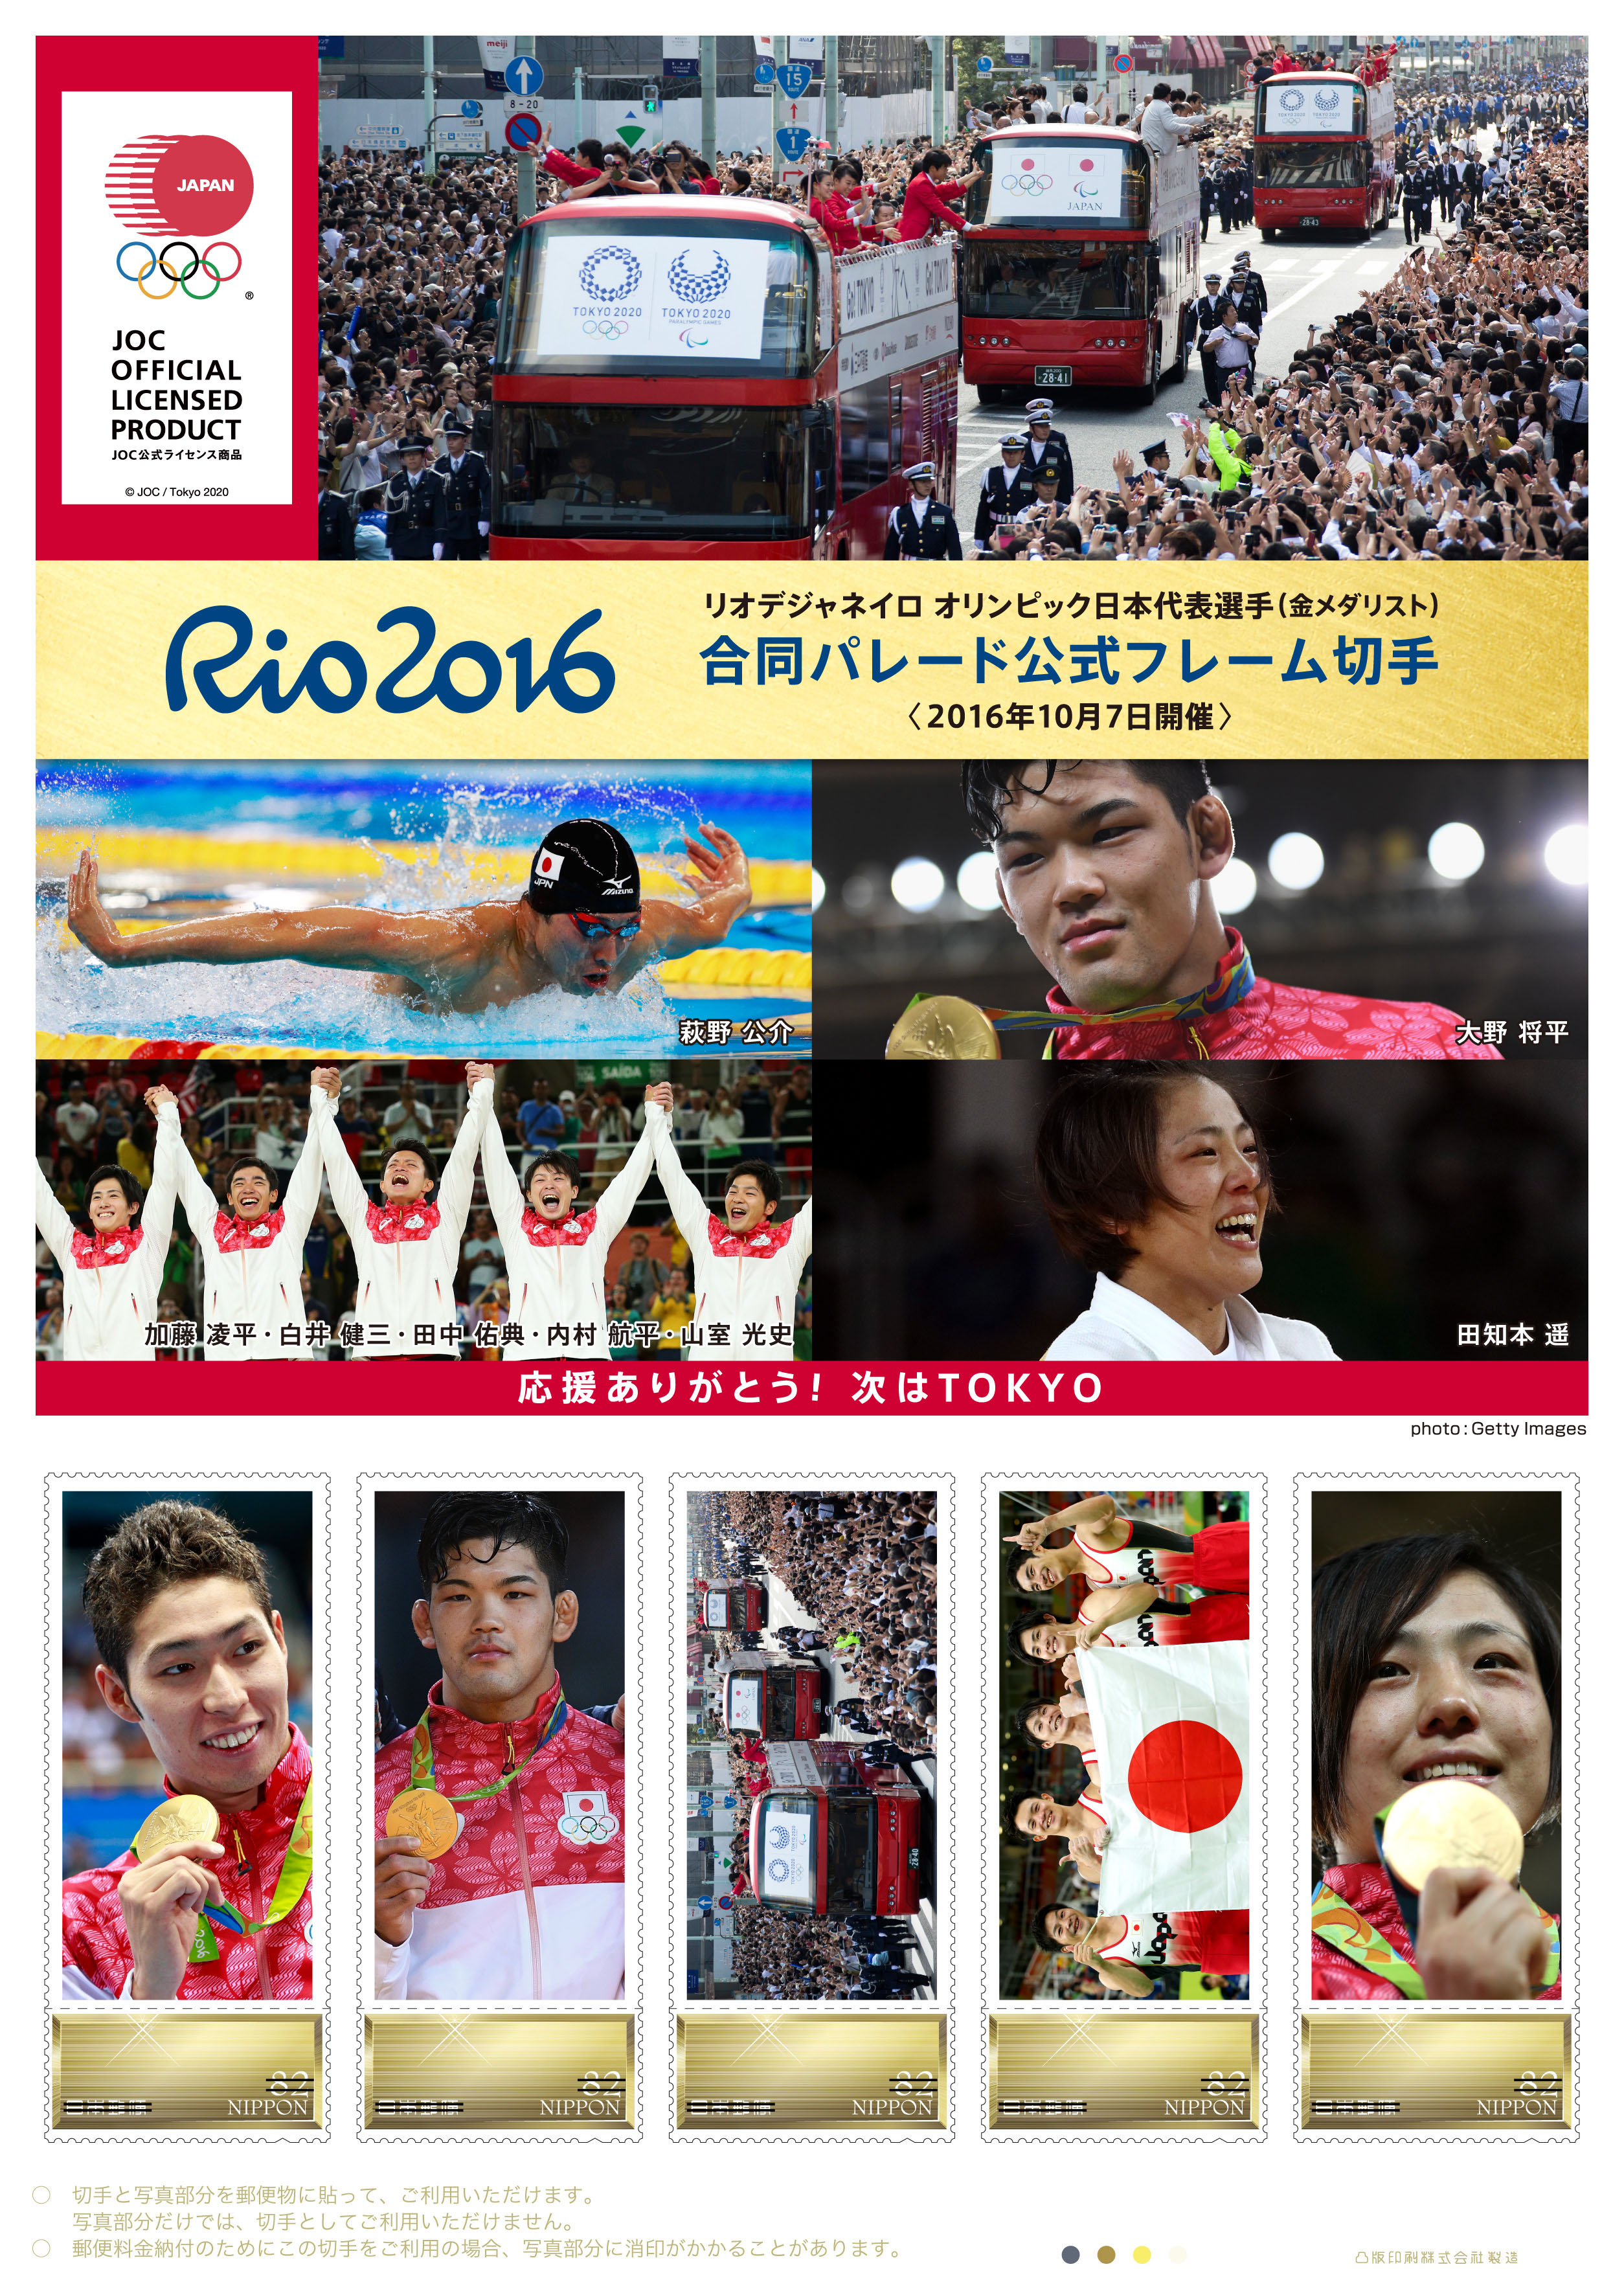 リオデジャネイロ オリンピック パラリンピック日本代表選手団合同パレード公式フレーム切手の販売 日本郵便